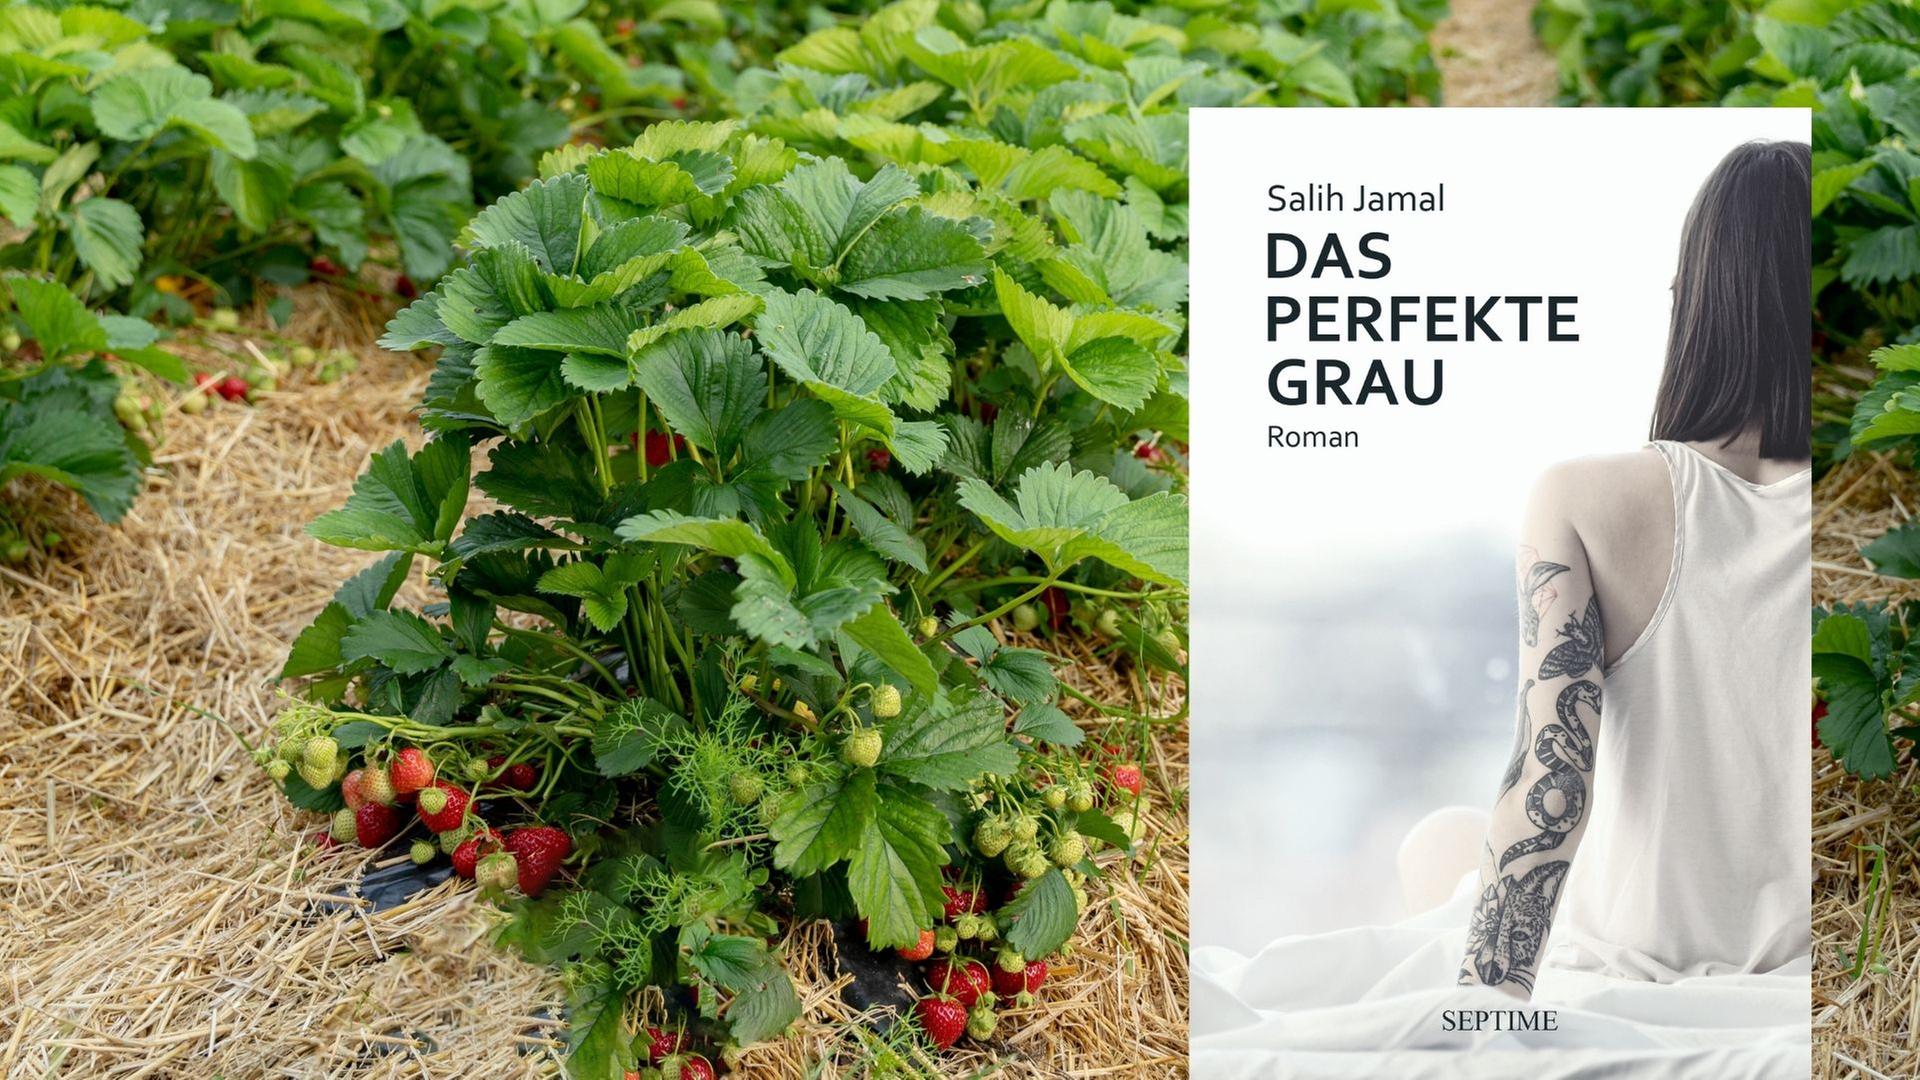 Buchcover: Salih Jamal: „Das perfekte Grau“, im Hintergrund ein Erdbeerfeld